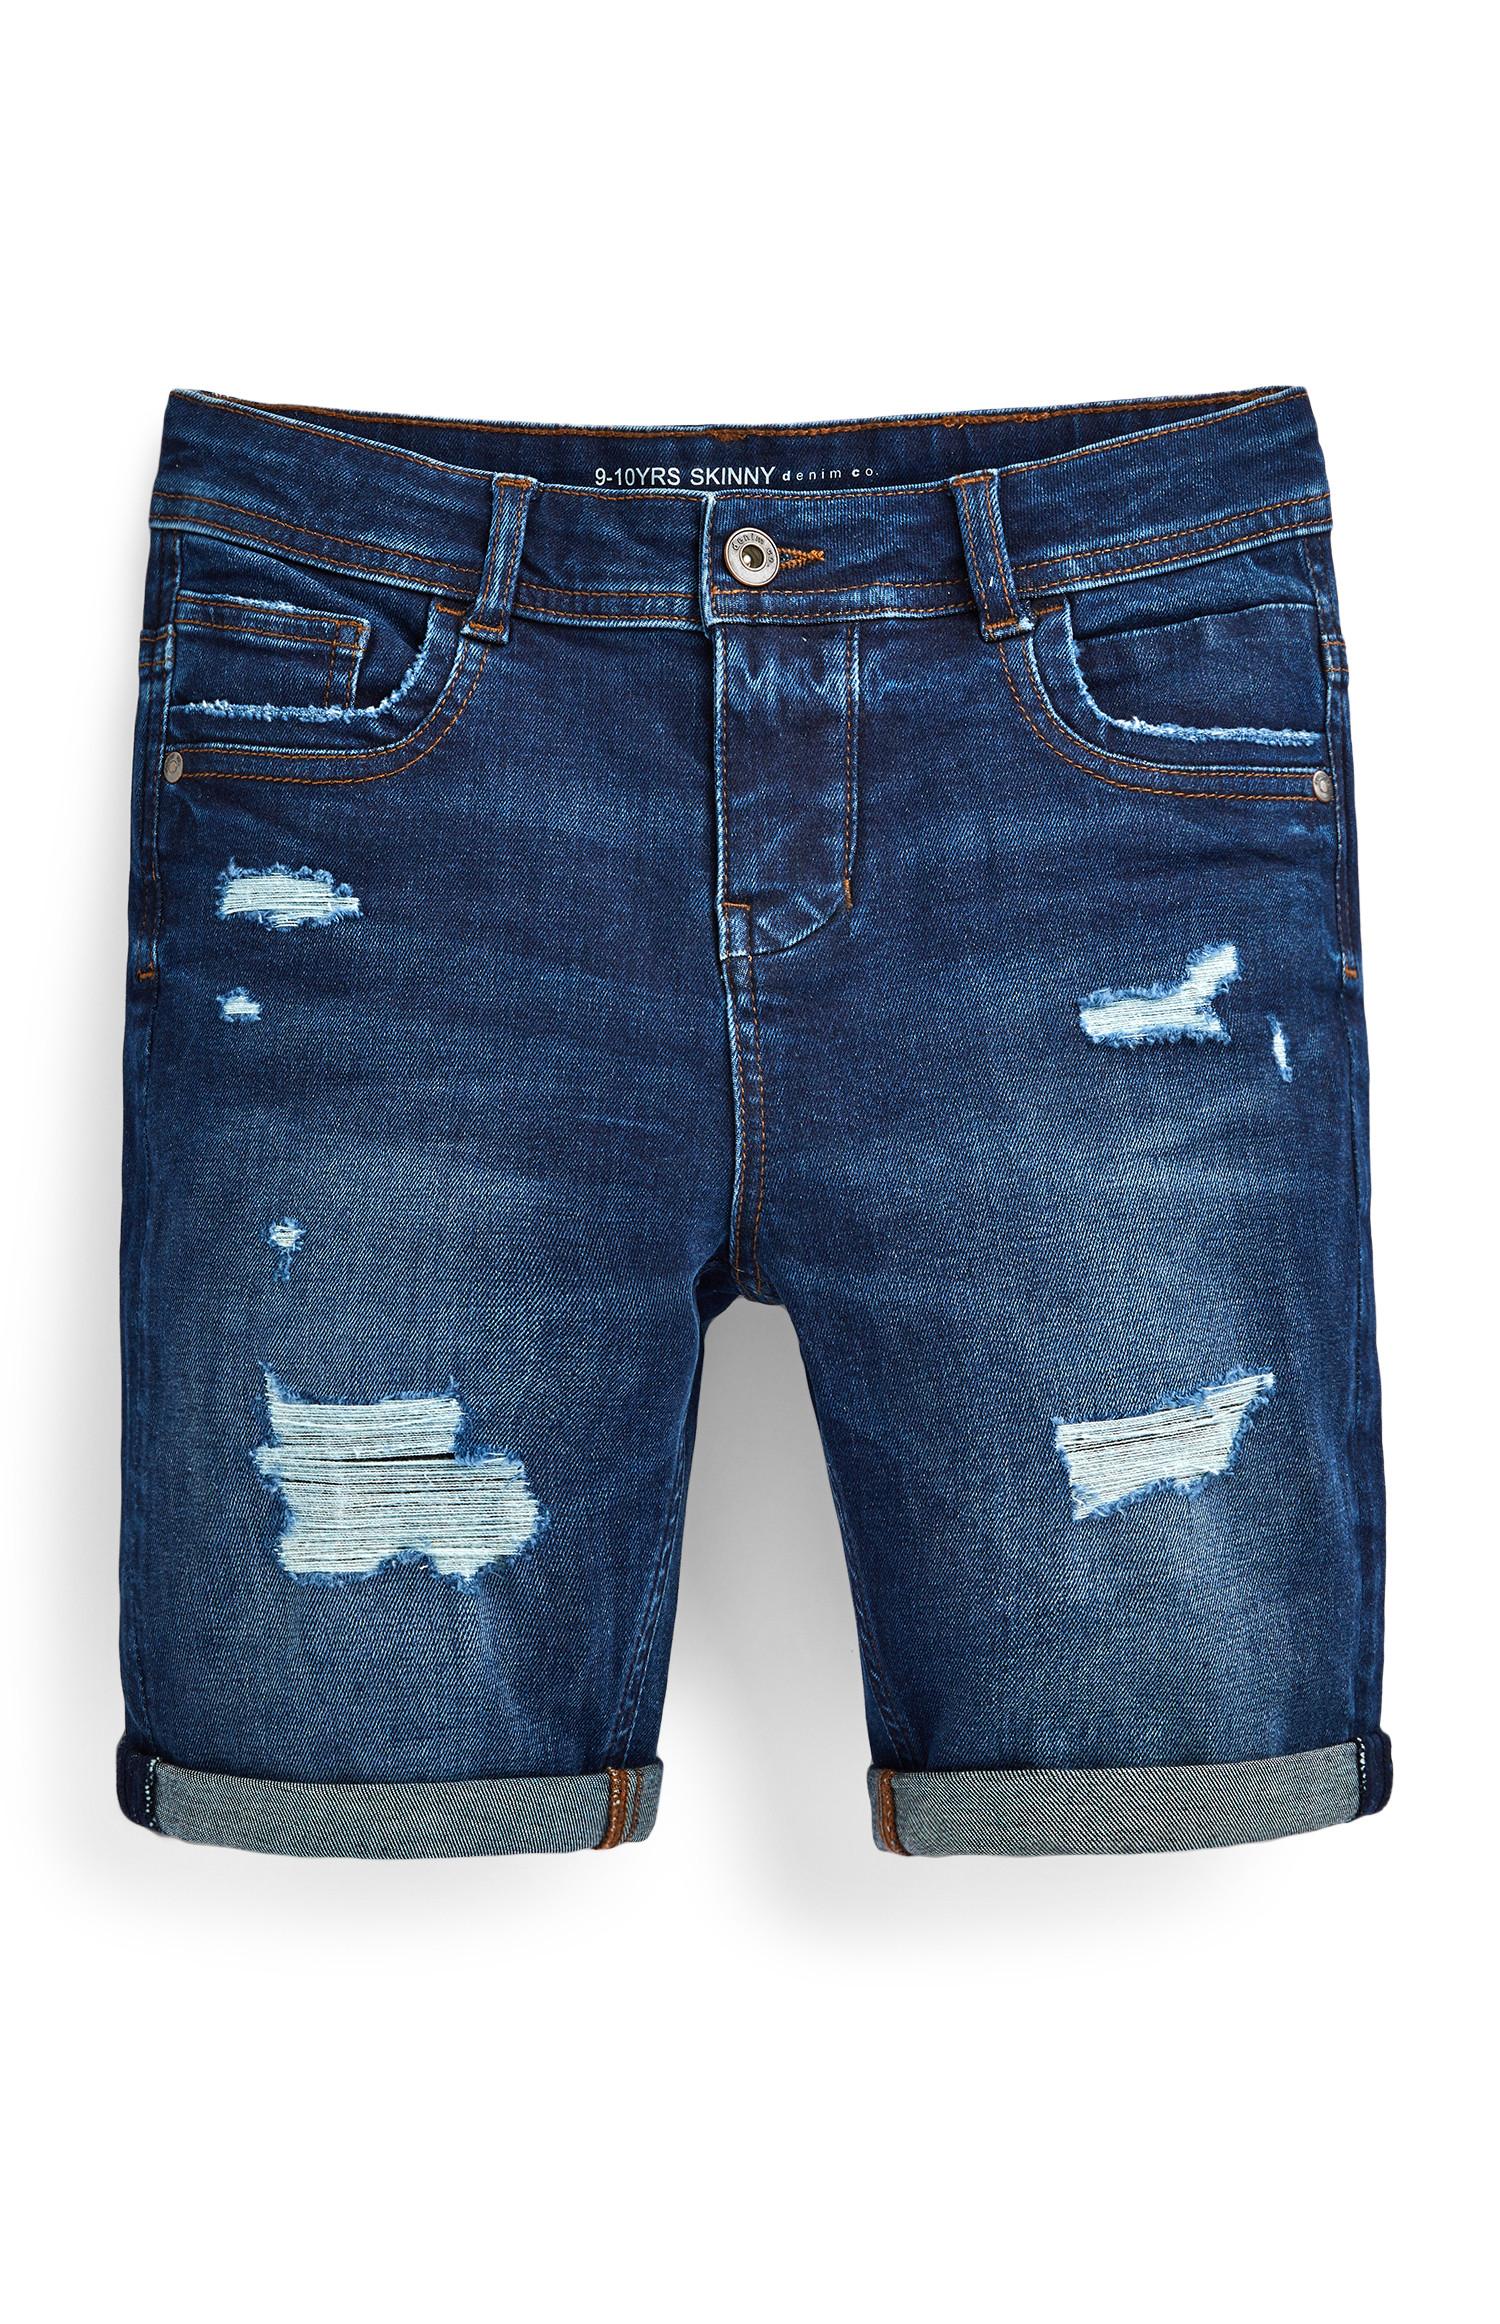 Older Boy Blue Distressed Skinny Denim Shorts | Older Boys Jeans ...